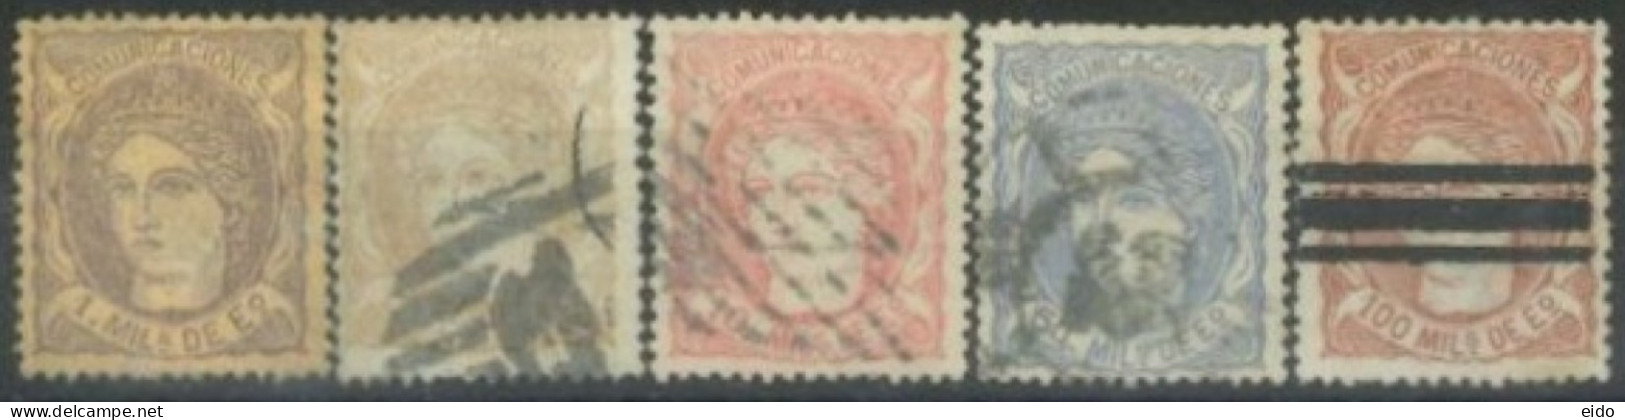 SPAIN,  1870 - ESPANA STAMPS SET OF 5, # 159, 163/64, & 166/67,USED. - Oblitérés